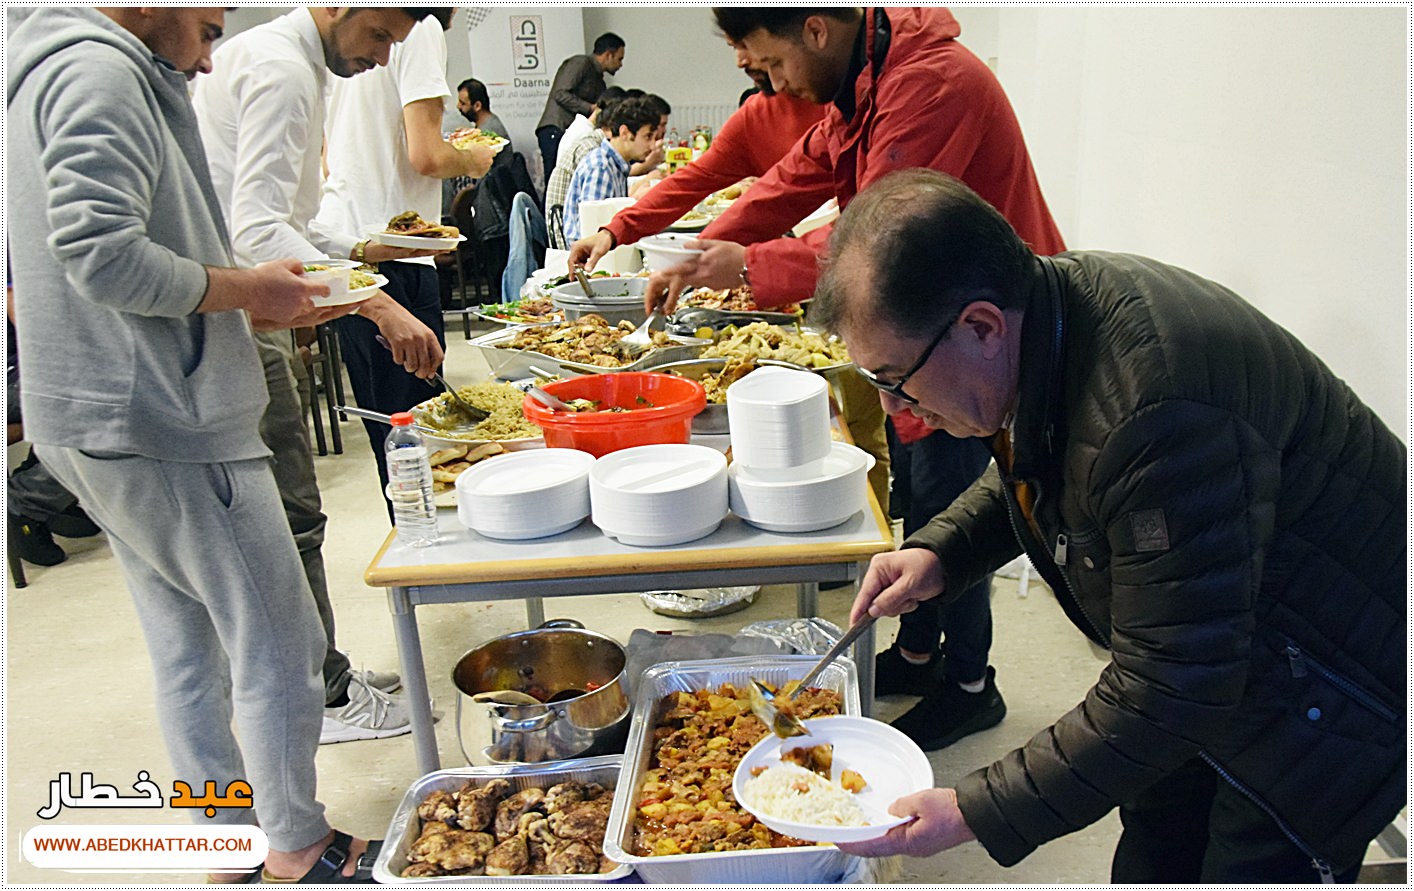 مائدة افطار رمضانية لطلابنا الفلسطينيين في مركز دارنا في برلين